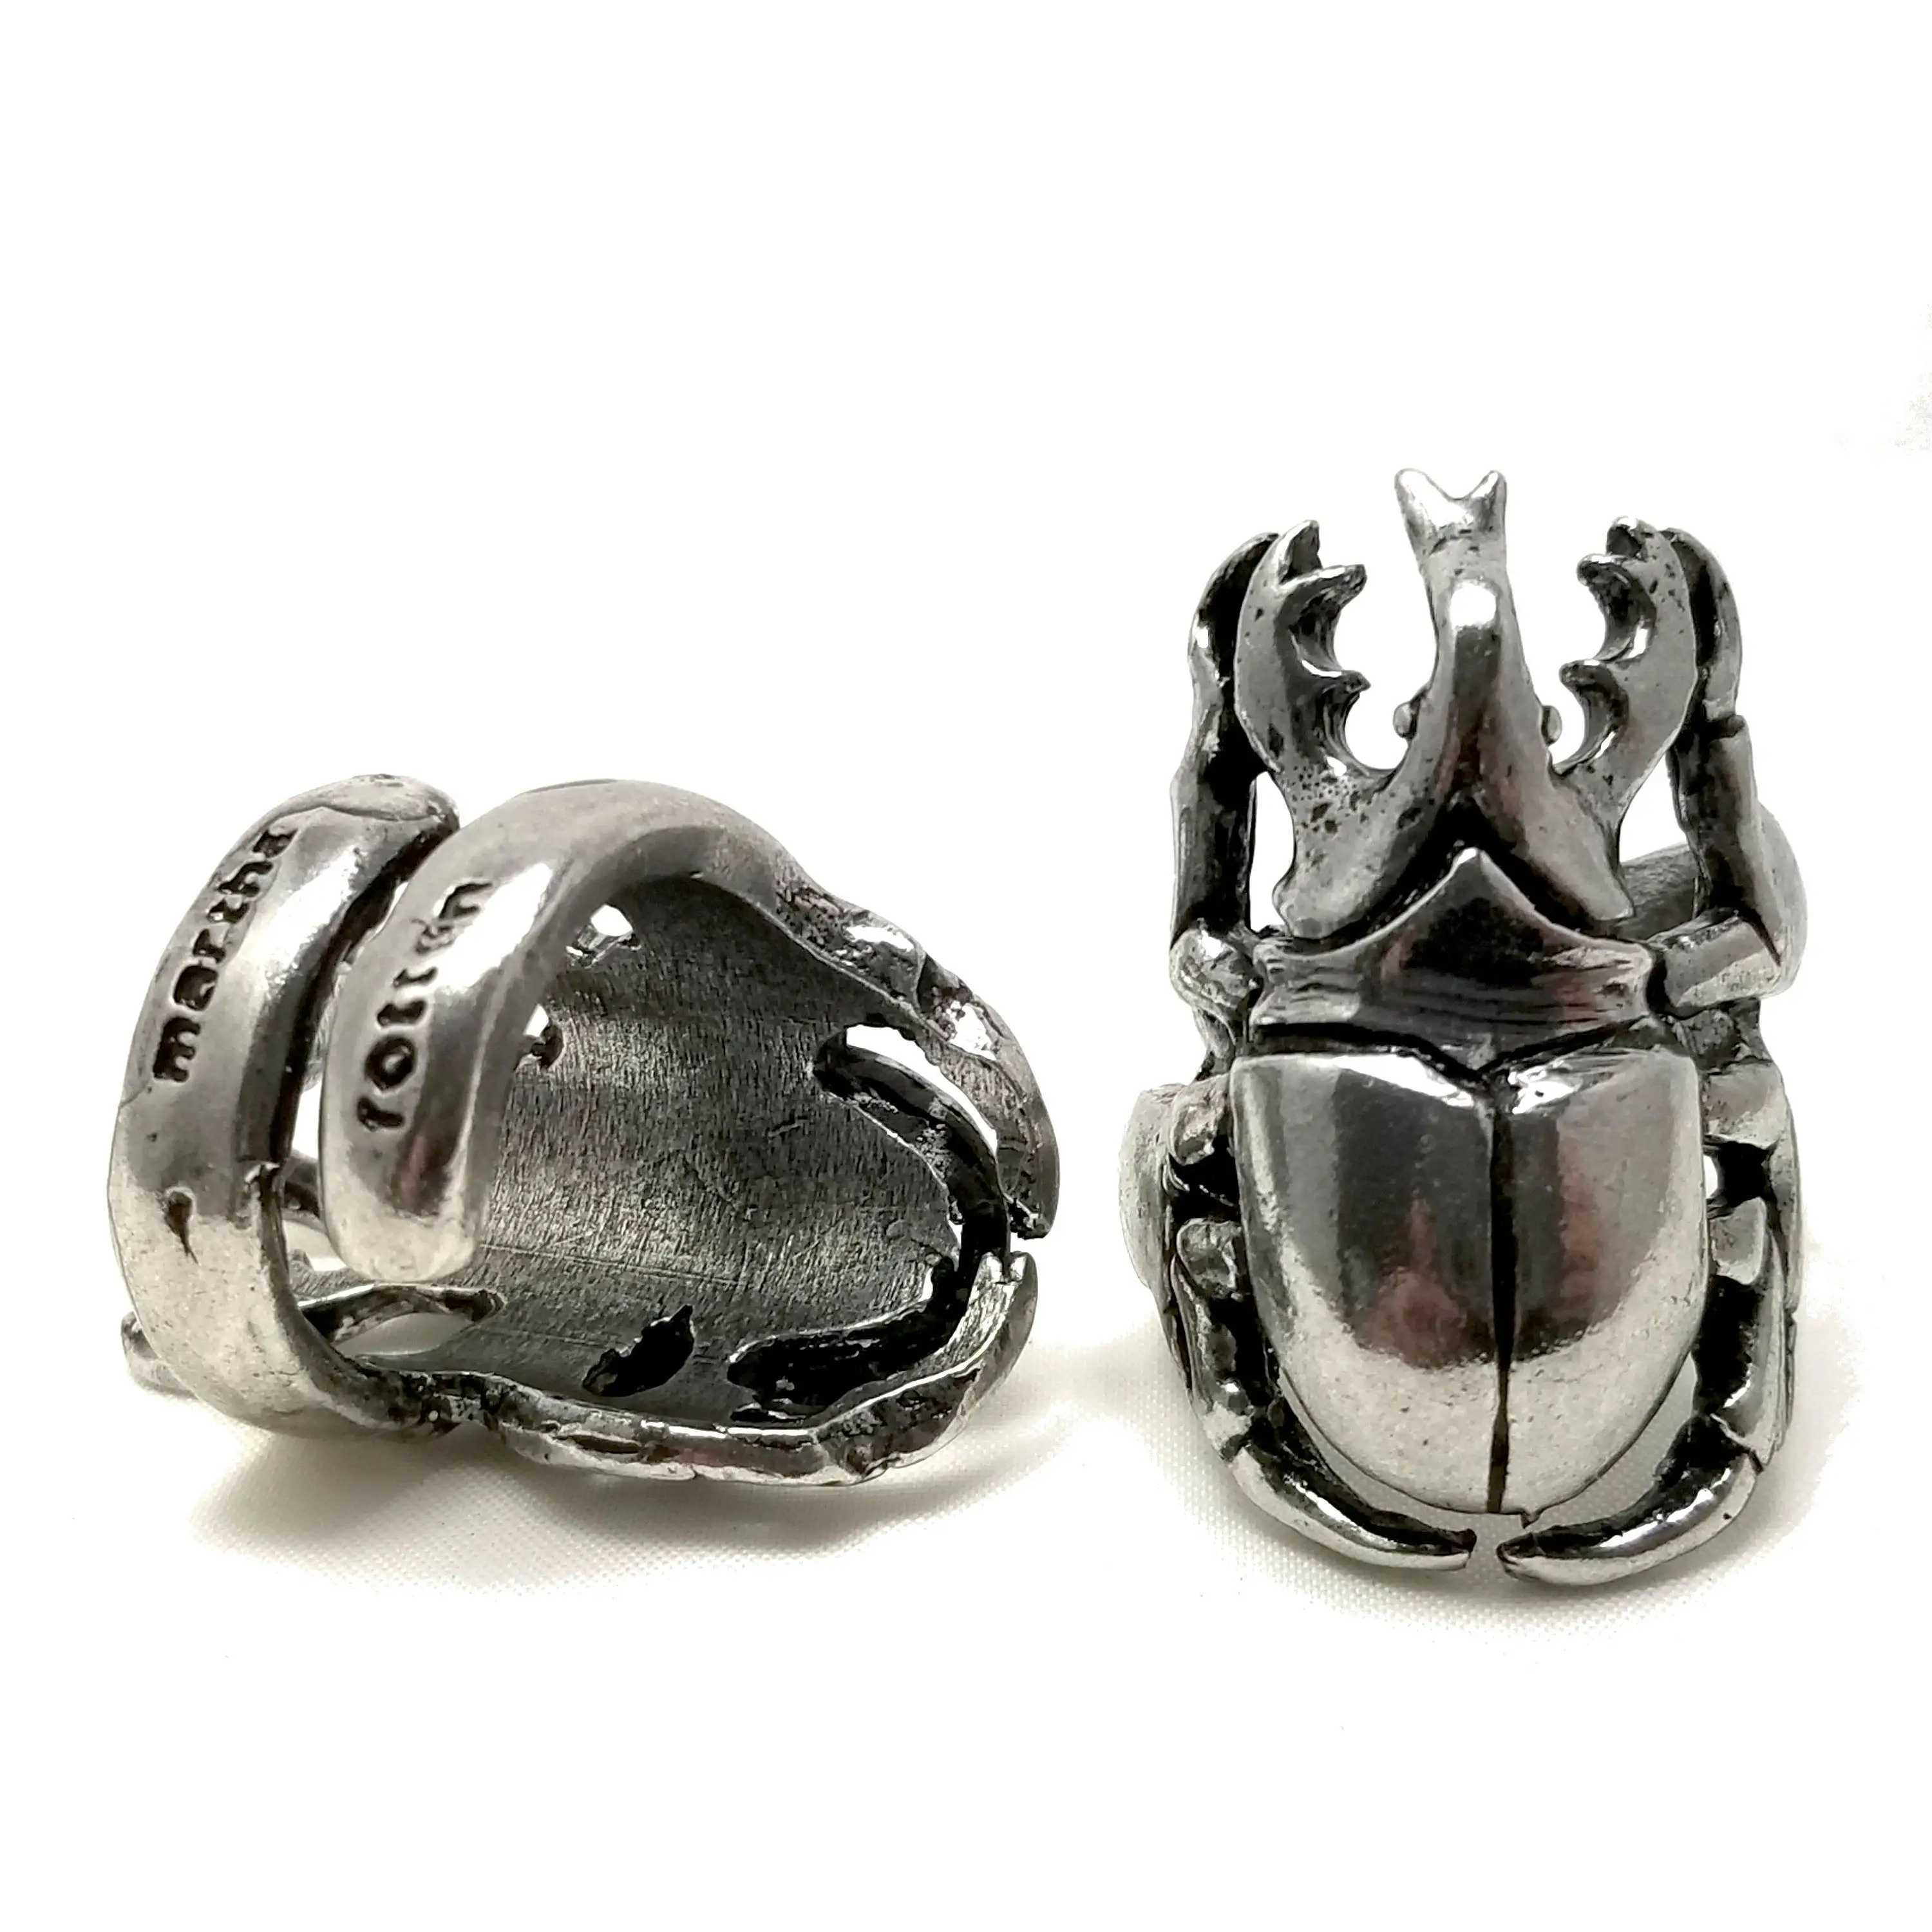 Encantador lindo anillo de escarabajo de plata joyería de escarabajo para amantes de la joyería símbolos culturales egipcios finos